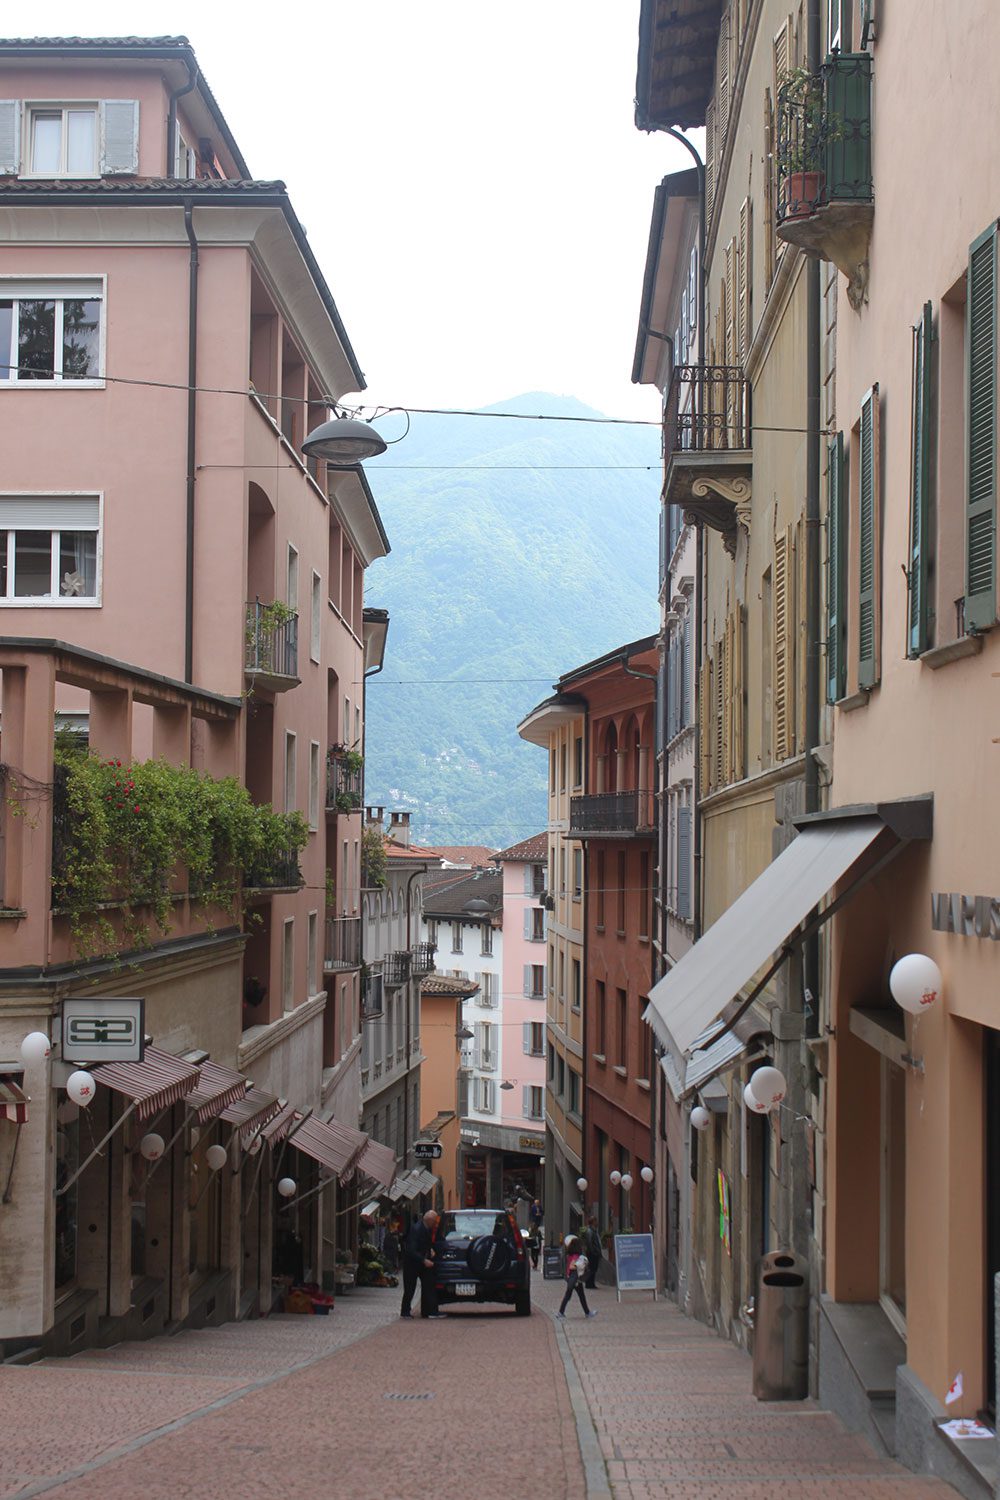 Lugano, Ticino, Switzerland